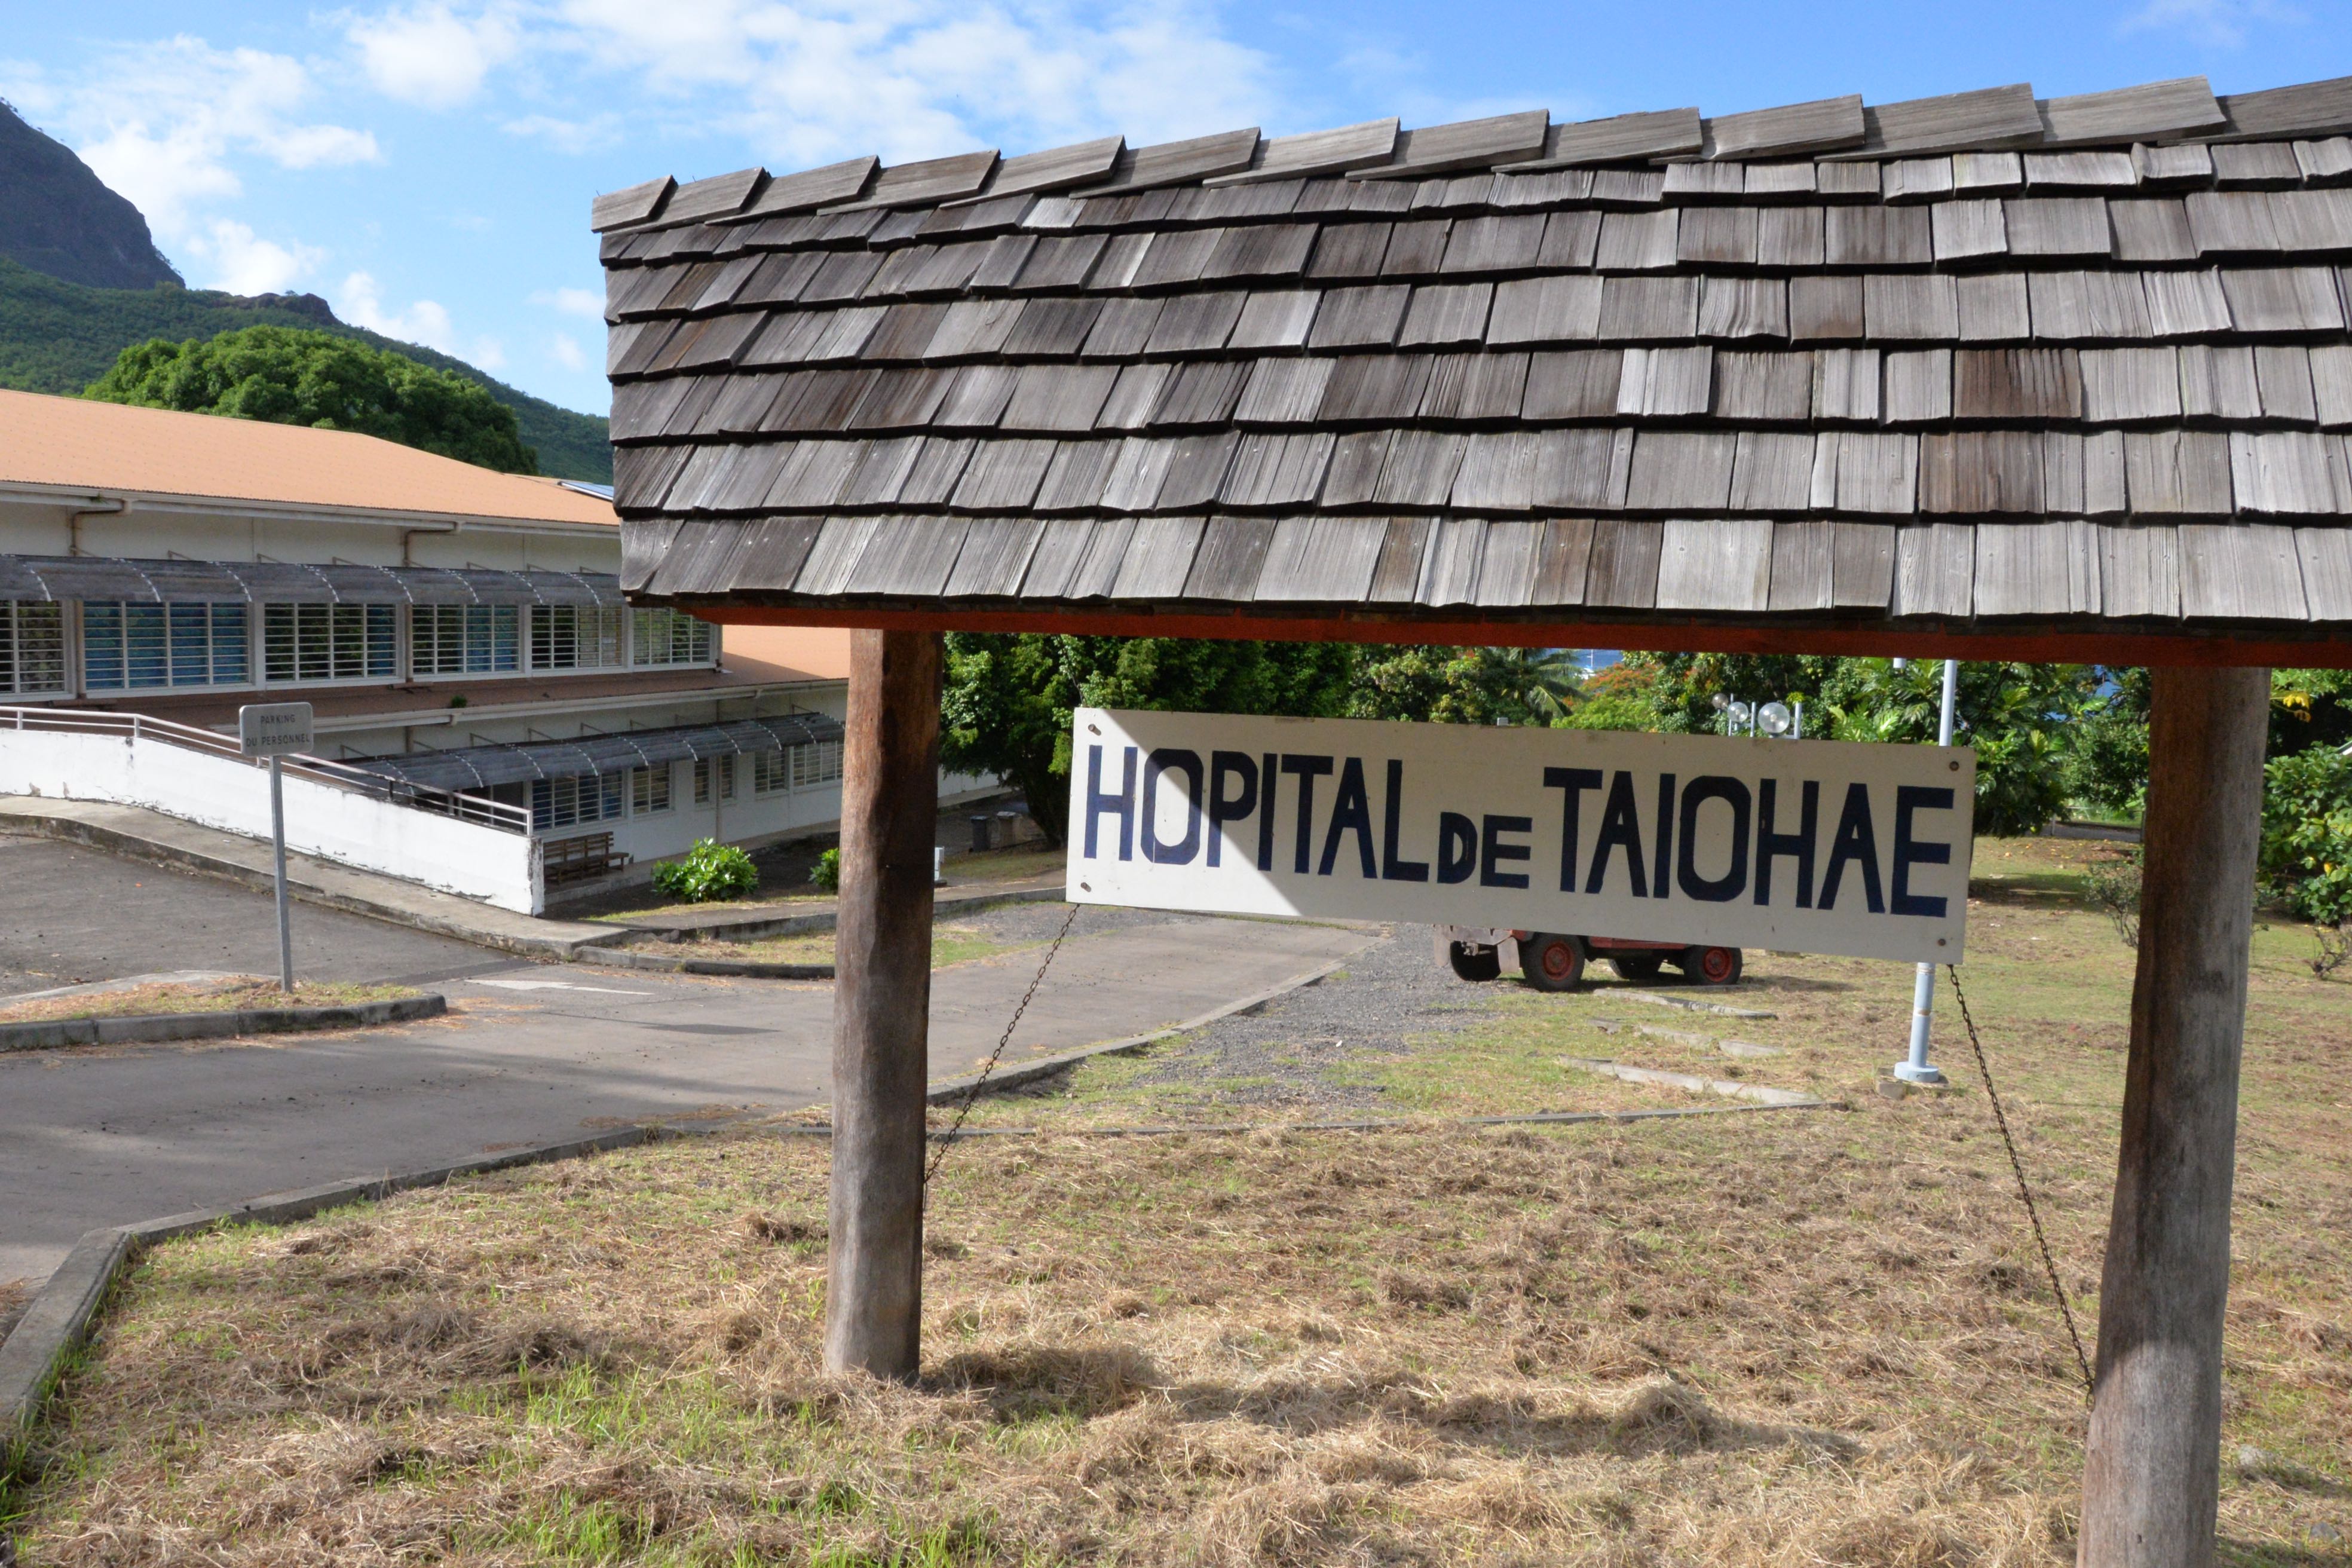 Seul centre hospitalier de l’archipel, l’hôpital de Taiohae accueille des patients de toutes les Marquises. Actuellement, il n’y a pas assez de personnel pour le faire fonctionner au meilleur de ses capacités.